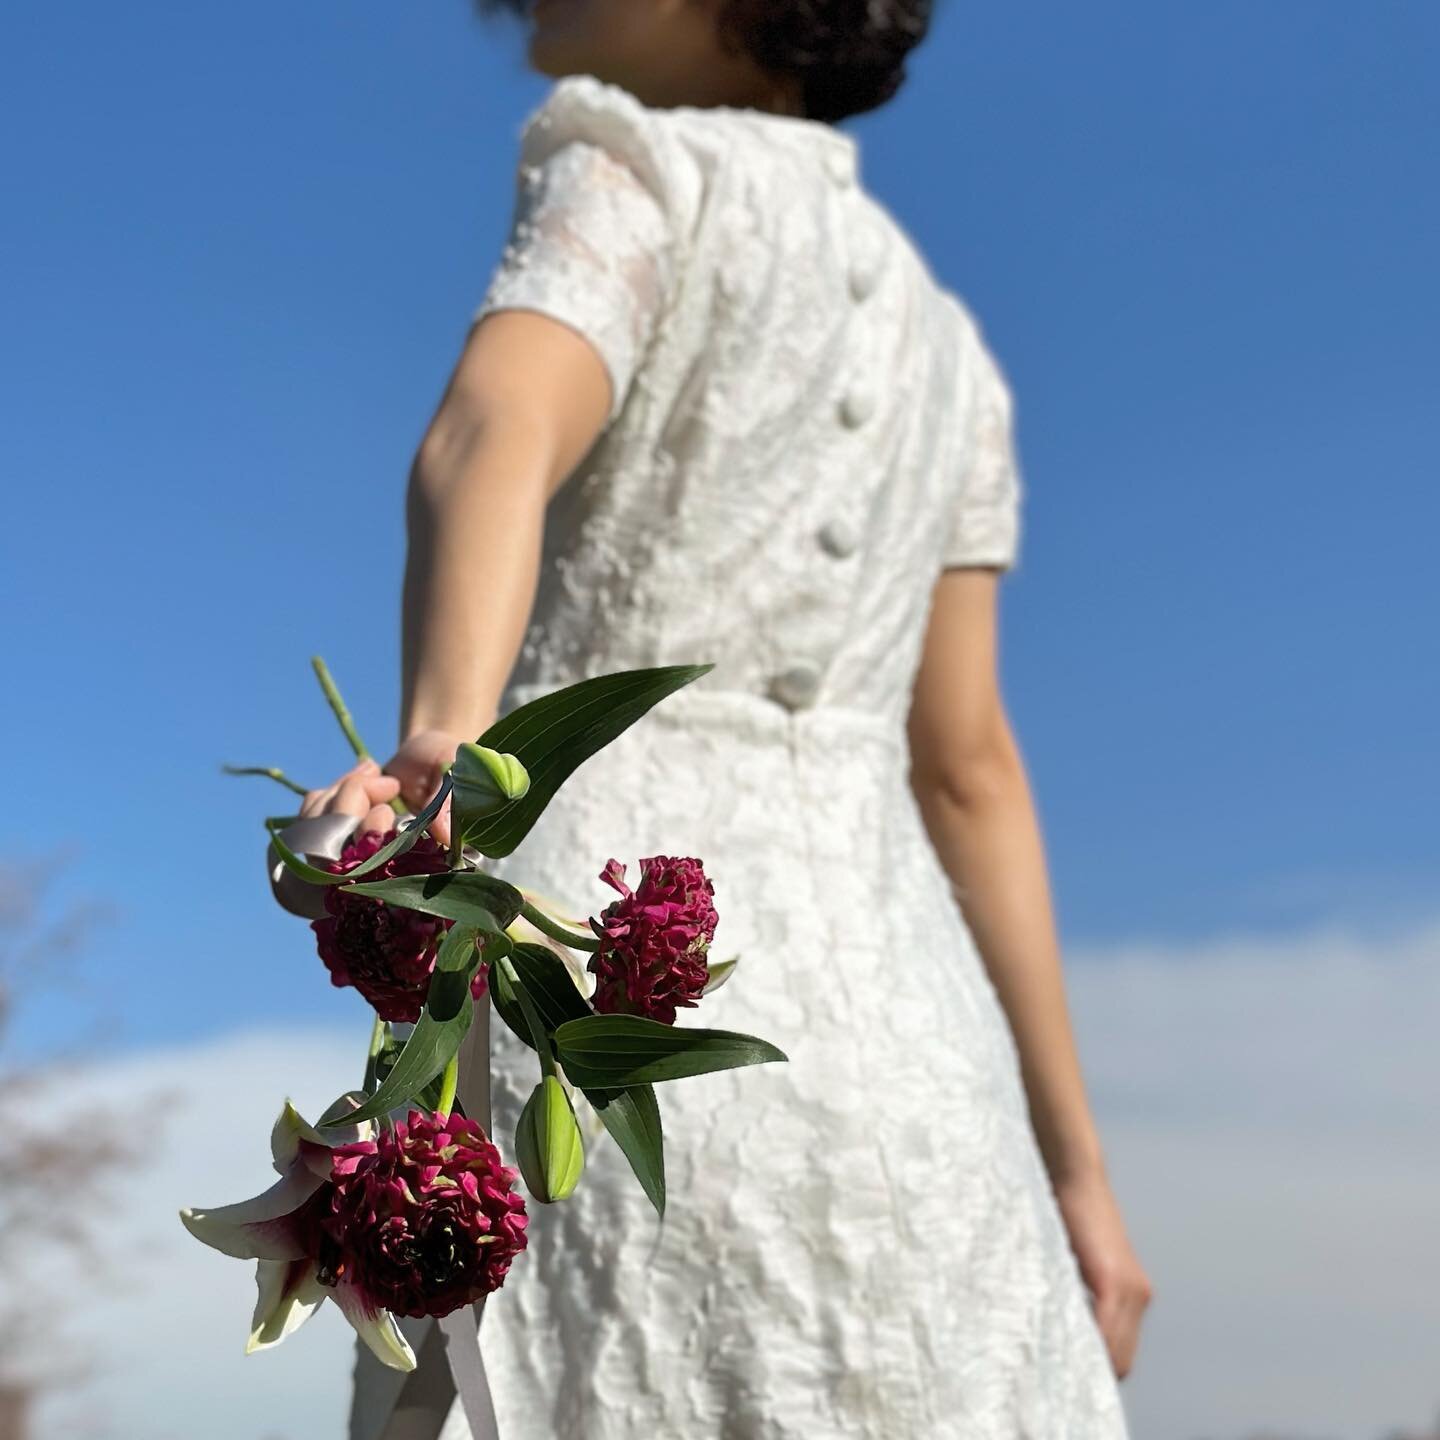 Yes, finally spring is here🌸
.
#weddingbouquet #snapbouquet
#nyweddingflower #njweddingflower #weddingflower #events #뉴저지웨딩플라워 #뉴욕웨딩플라워 #이벤트 #웨딩부케 #springishere #weeknedvibes